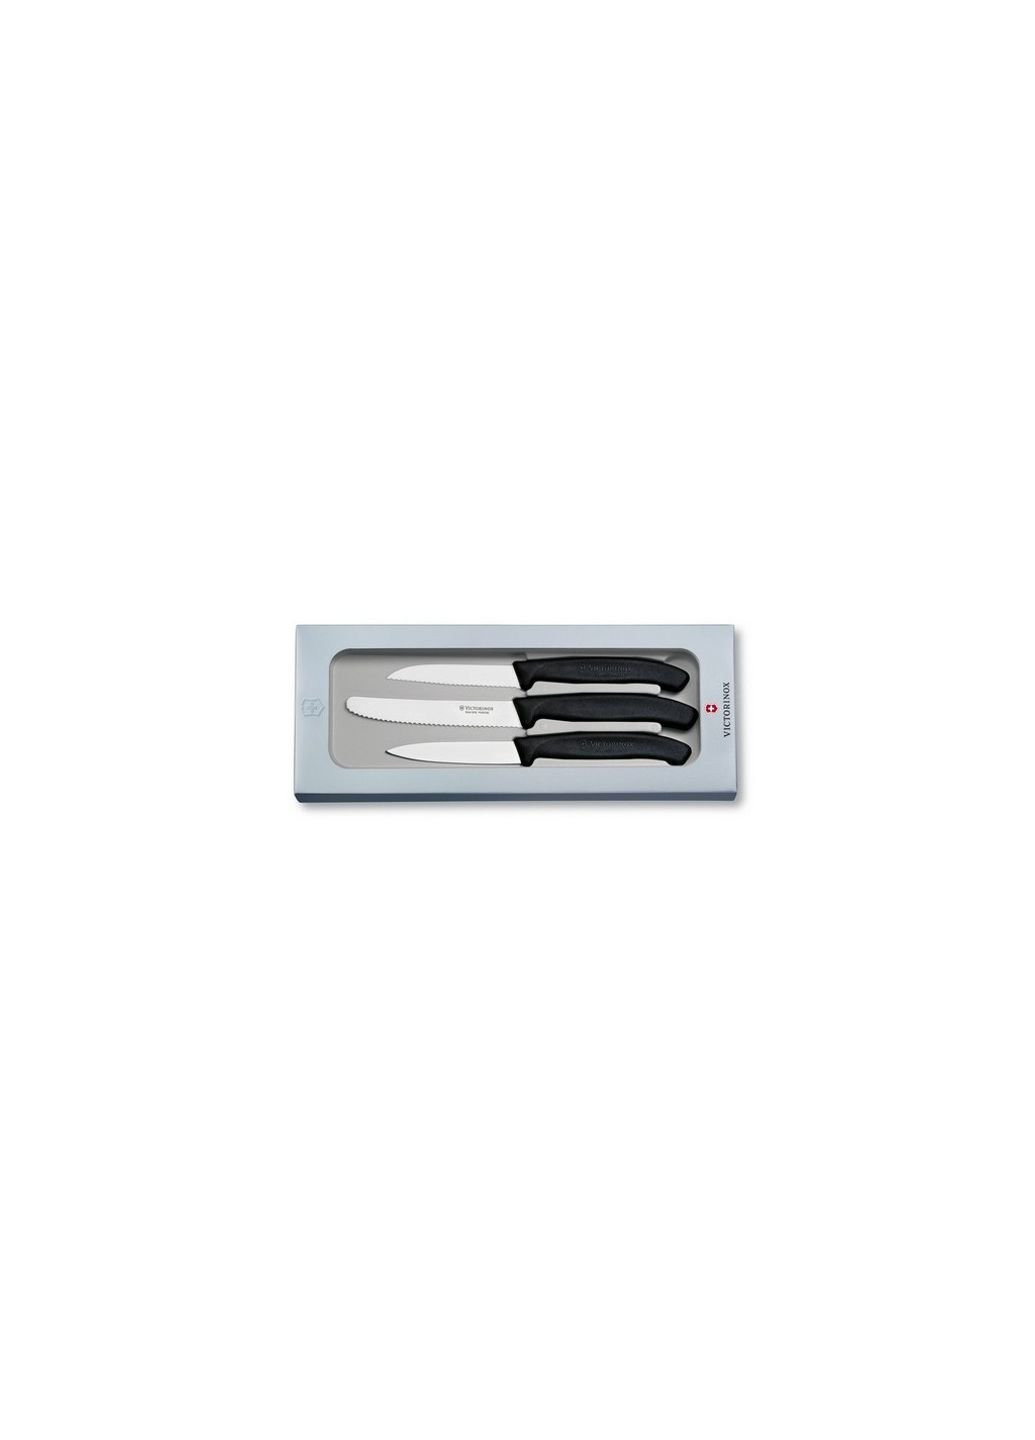 Набор ножей SwissClassic Paring Set 3 шт Black (6.7113.3G) Victorinox чёрные,